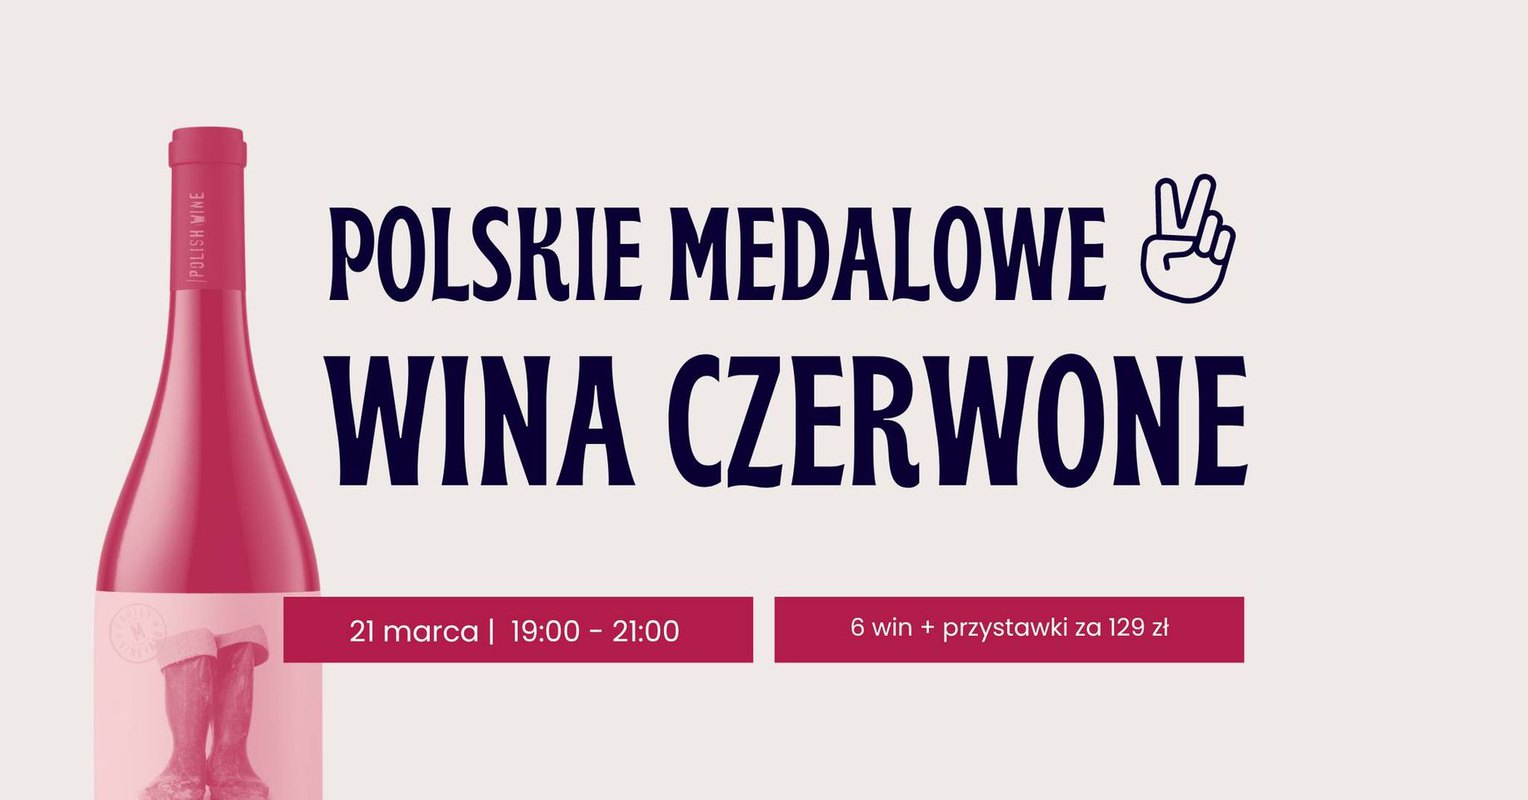 Polskie medalowe wina czerwone - vol. 2